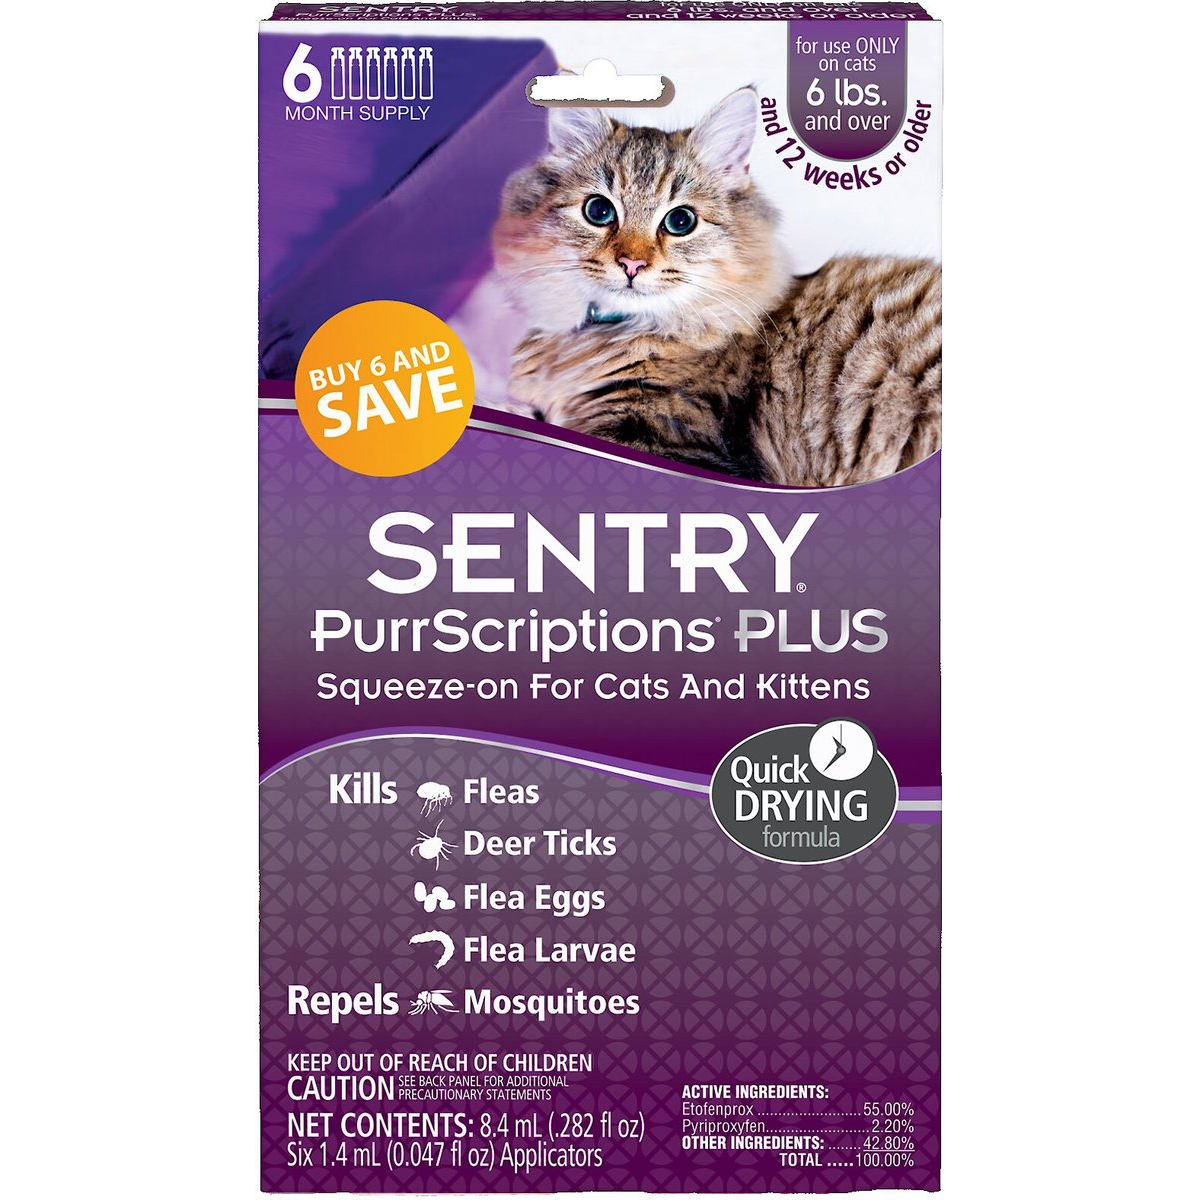 Sentry PurrScriptions Flea & Tick Spot Treatment for Cats, over 6 lbs new